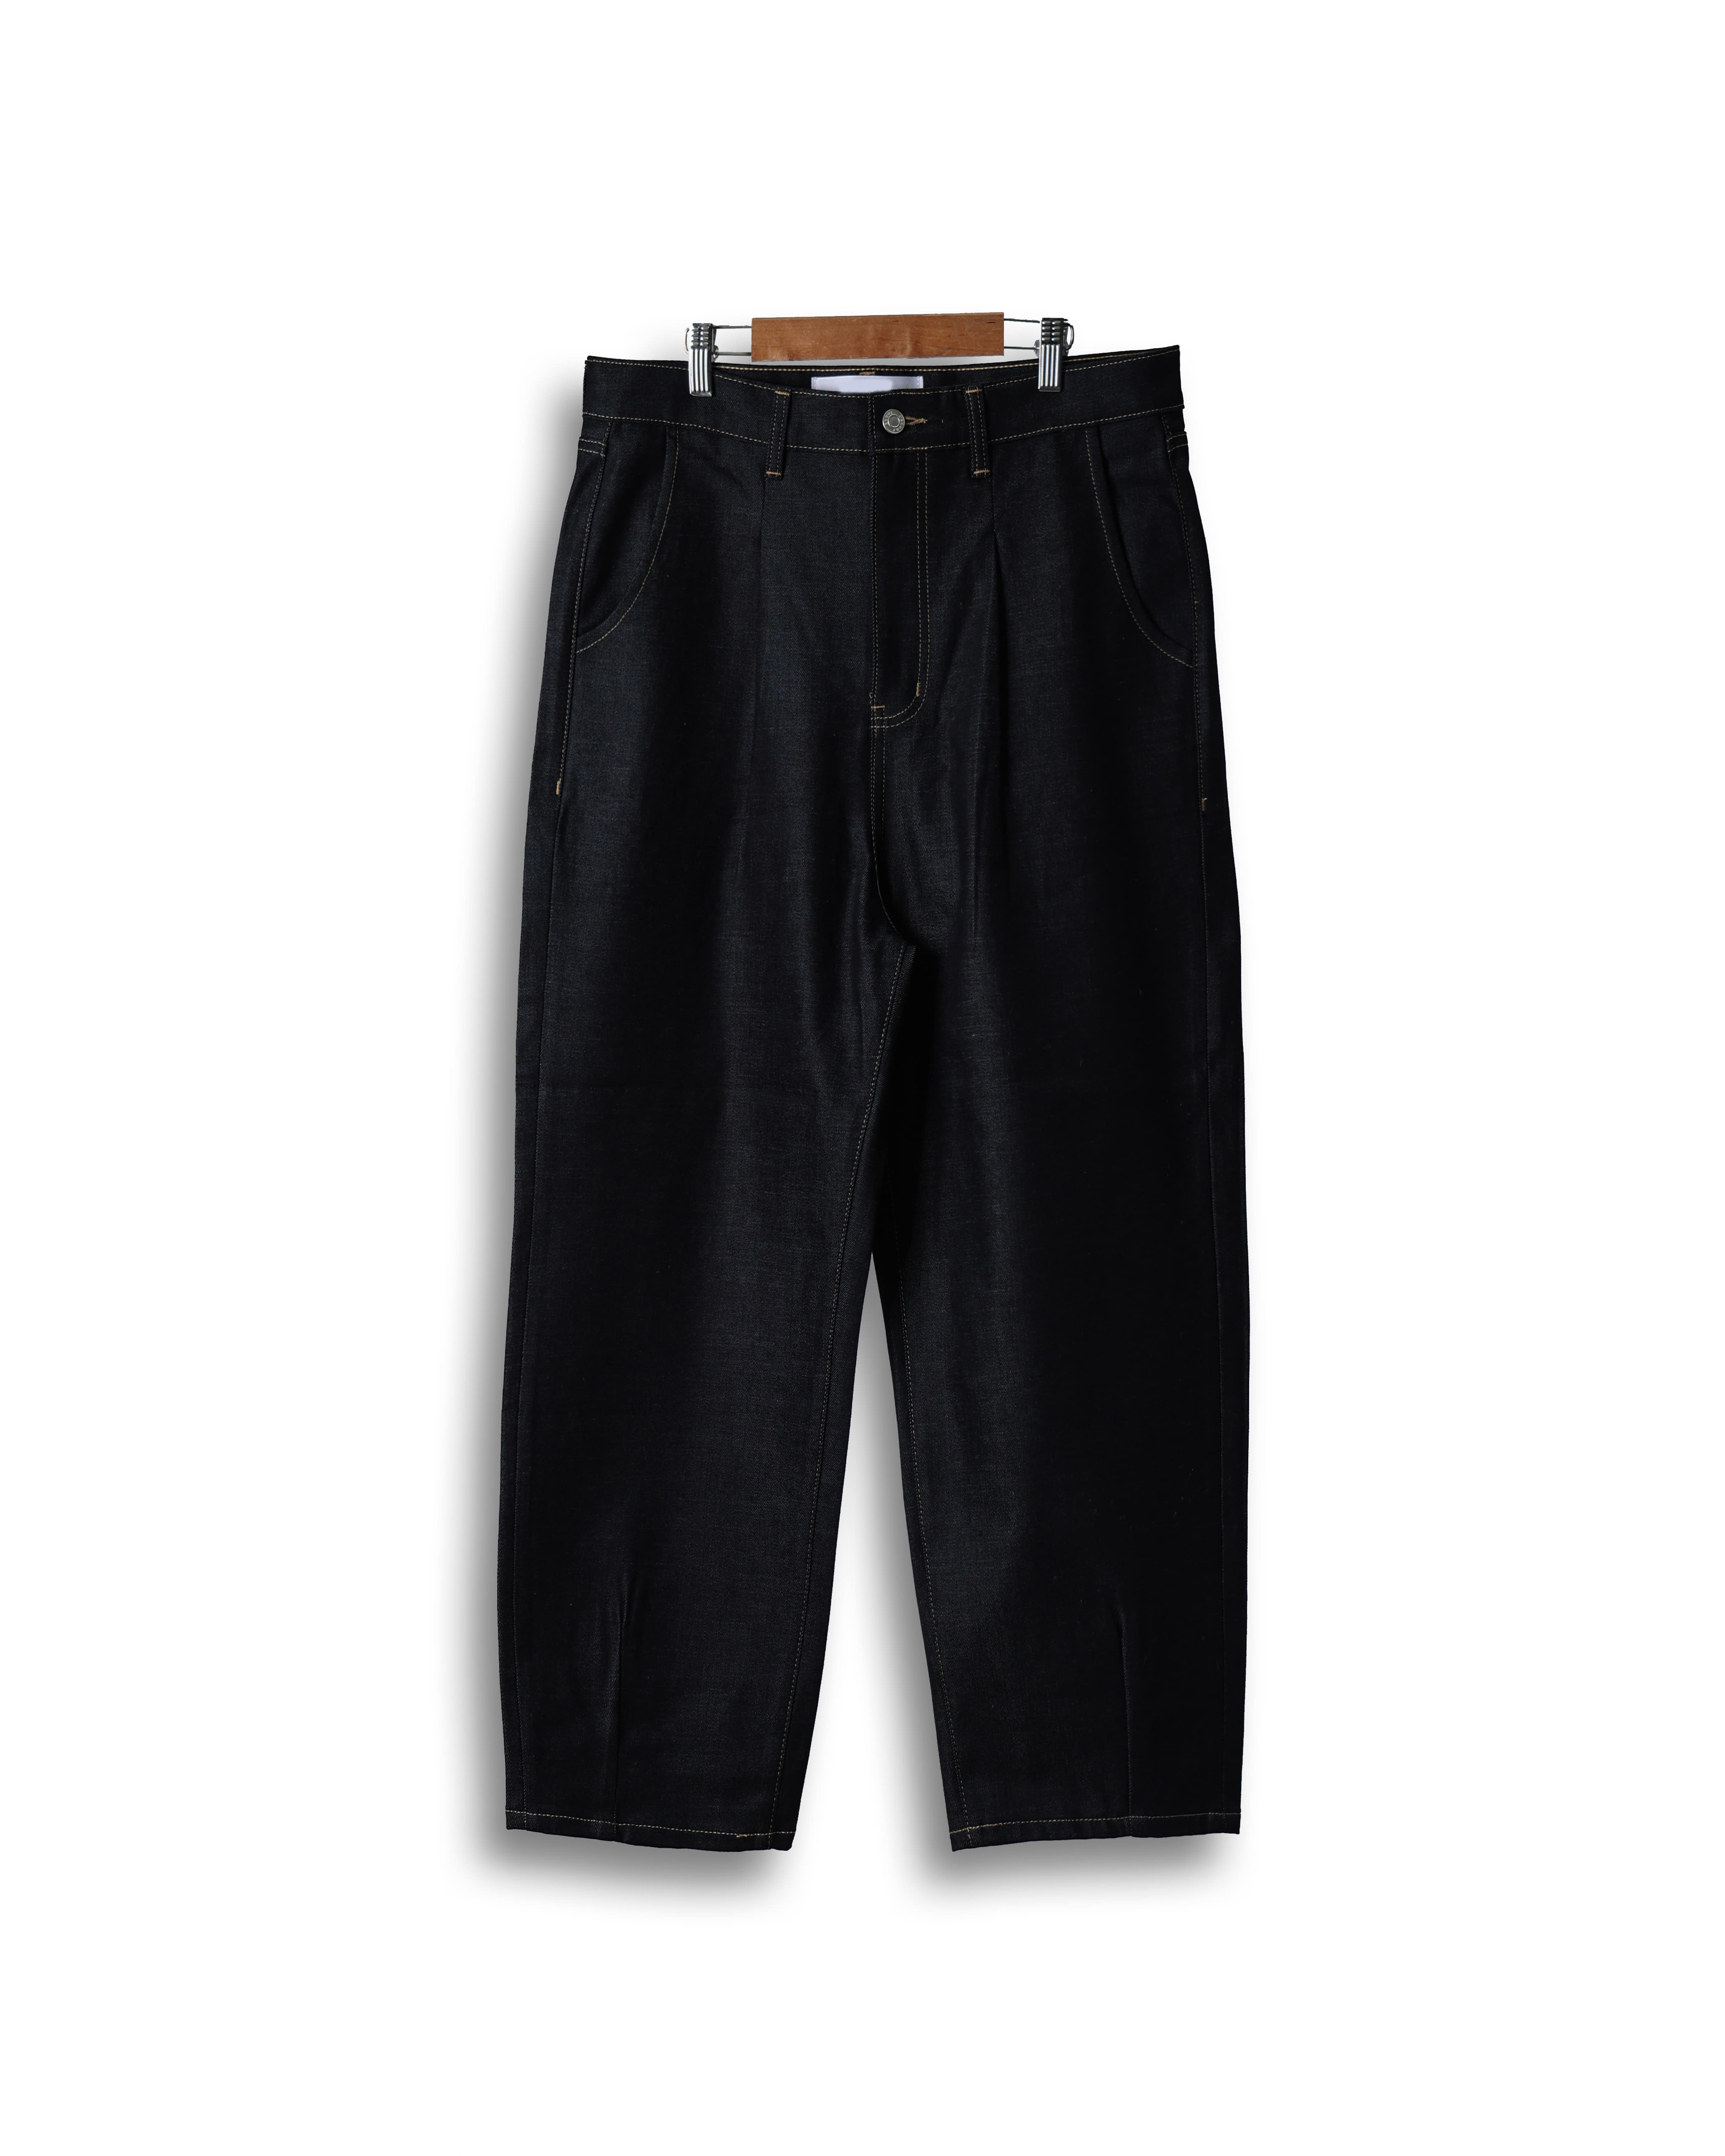 006 Semi-Wide Raw Denim Pants (Raw Denim)